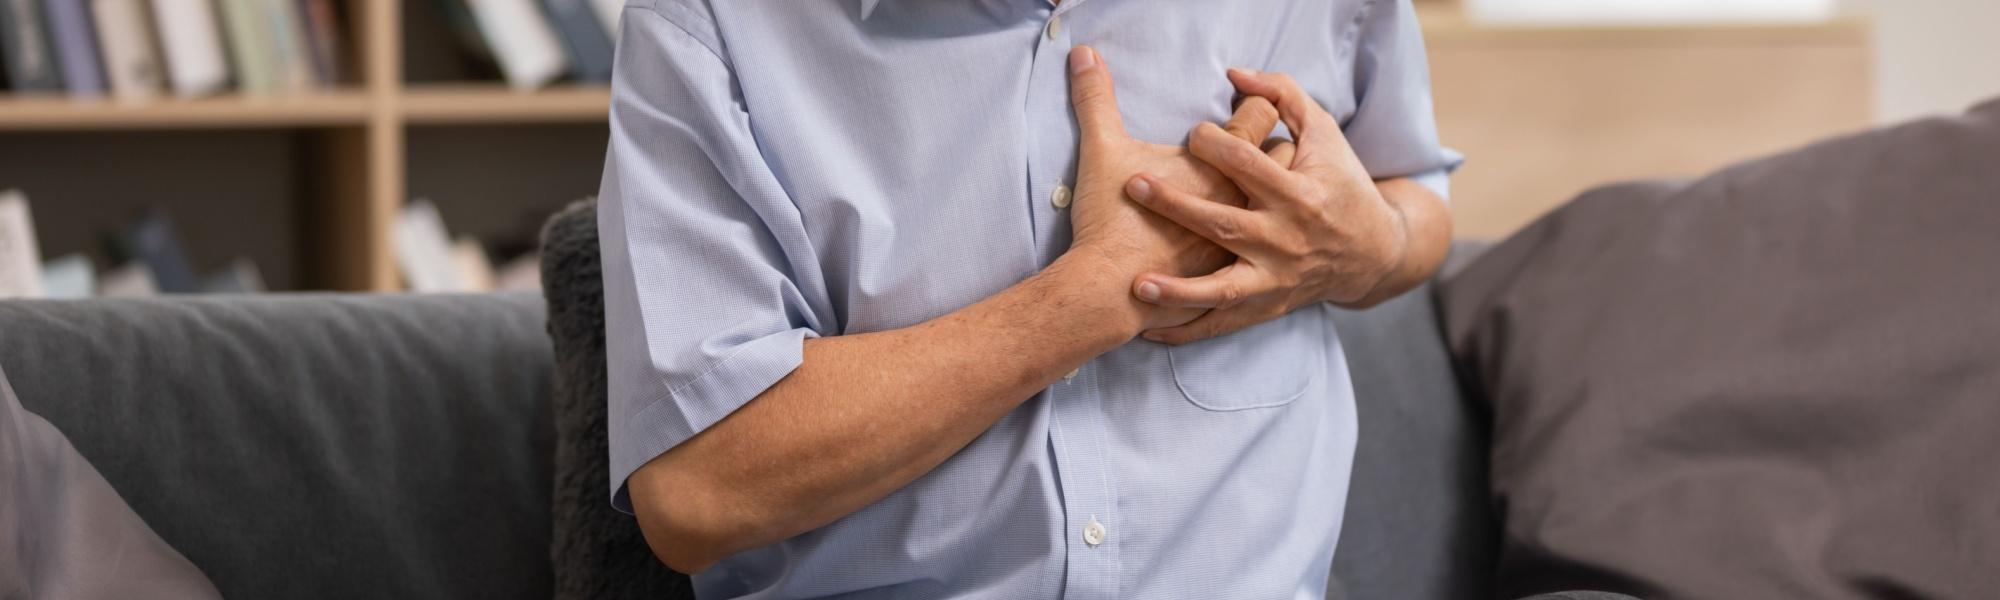 Kardiomiopatia rozstrzeniowa — przyczyny, objawy, diagnostyka, leczenie